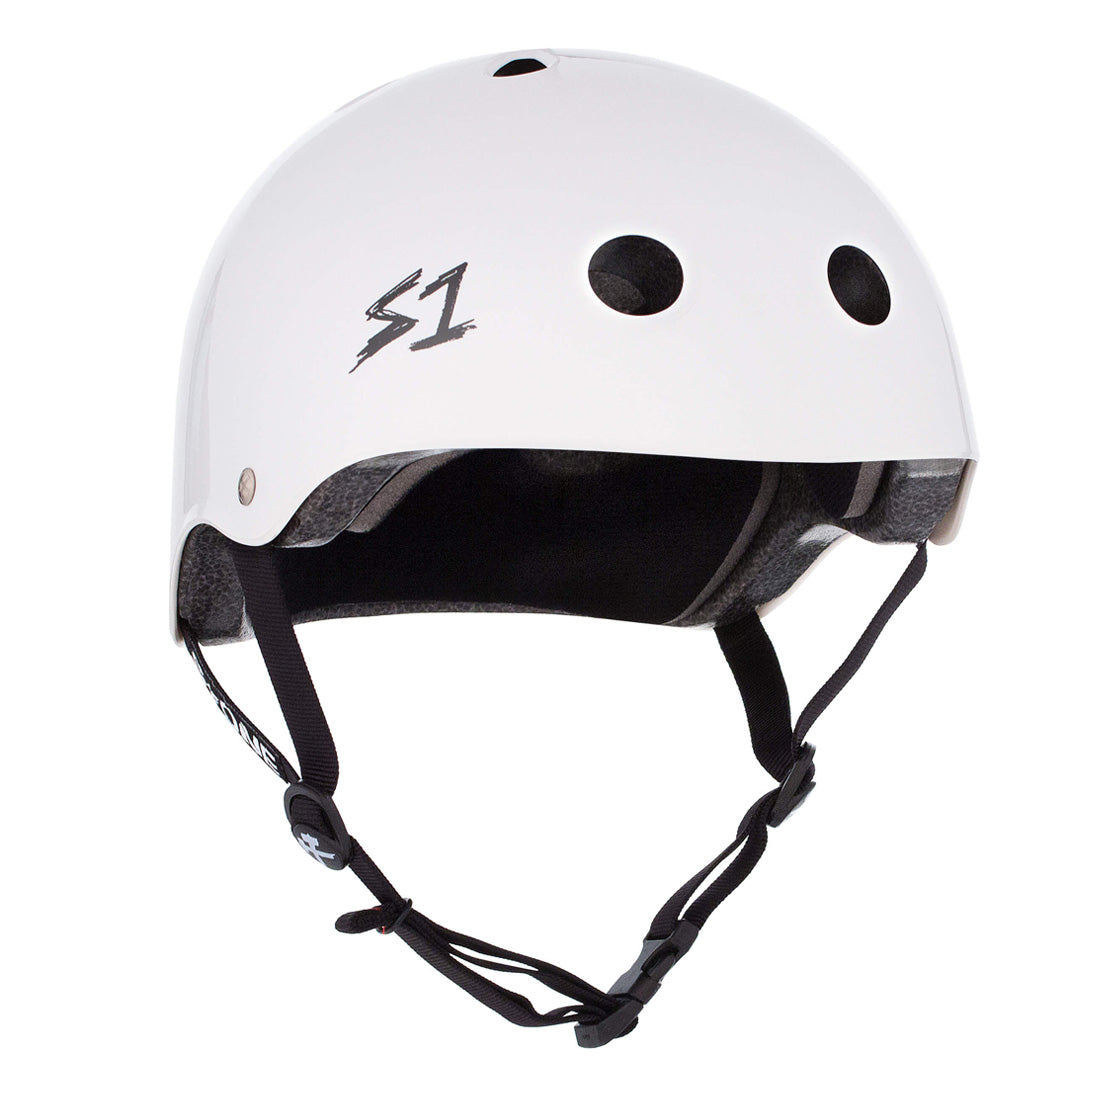 S-One Lifer Helmet - White Gloss Helmets